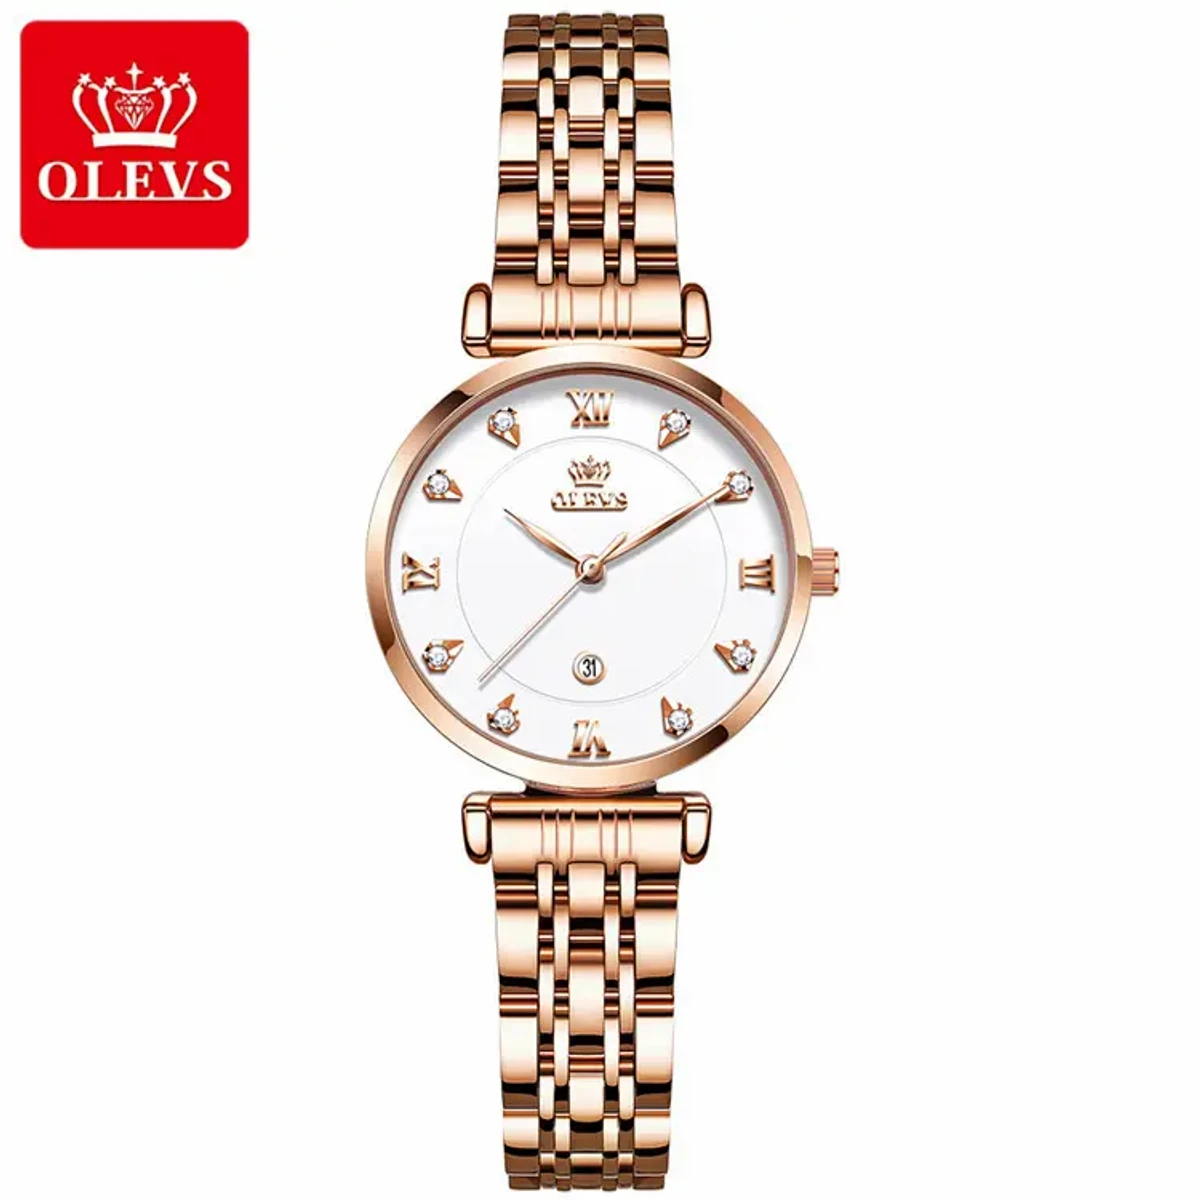 OLEVS WATCH MODEL 5866 Stainless Steel Analoge Wrist Watch For Women Olevs Model 5866 Golden Chain Dial whitw Watch